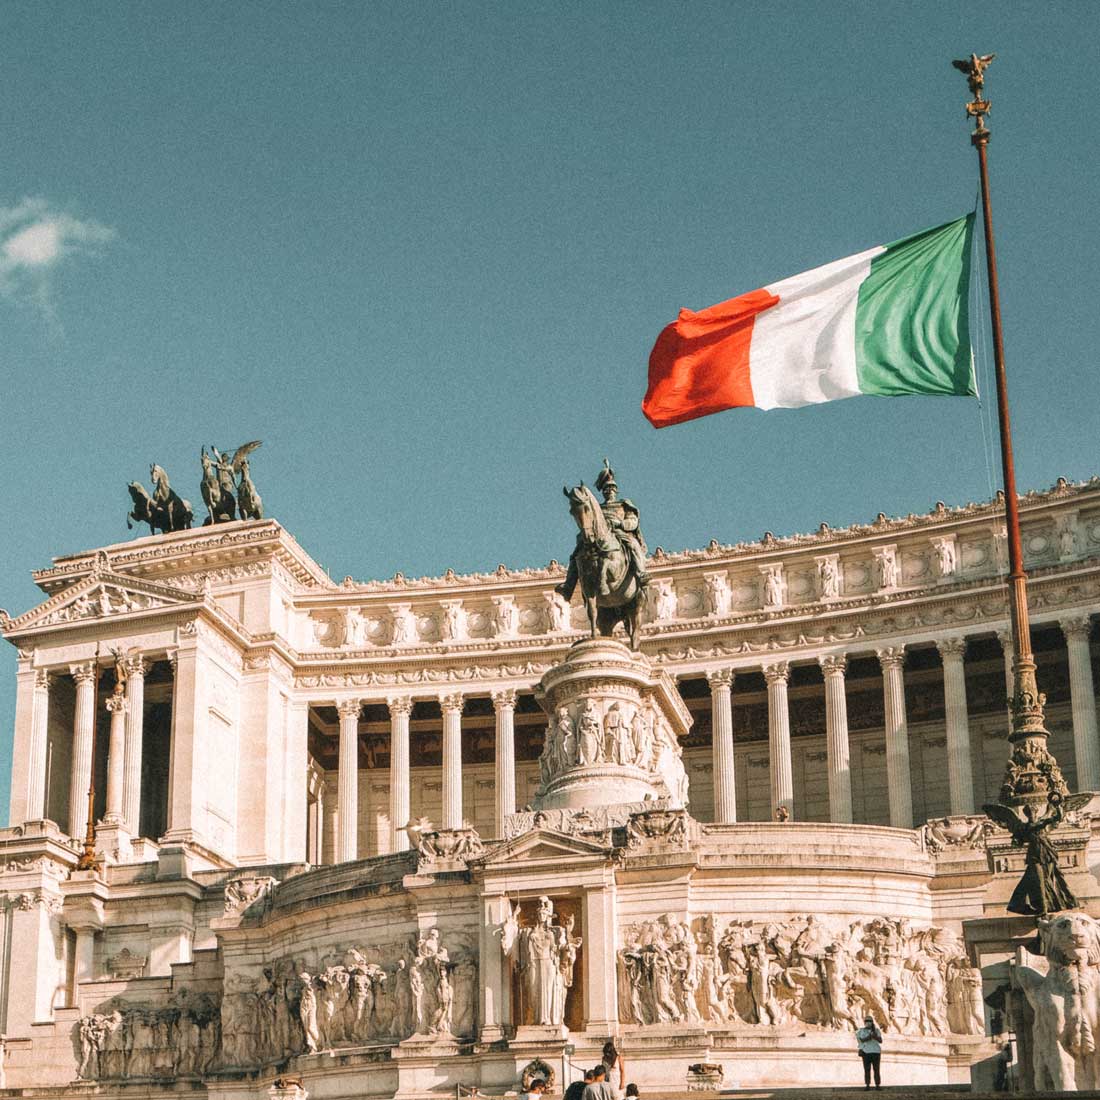 Monumento Vittoriano na Piazza Venezia em Roma